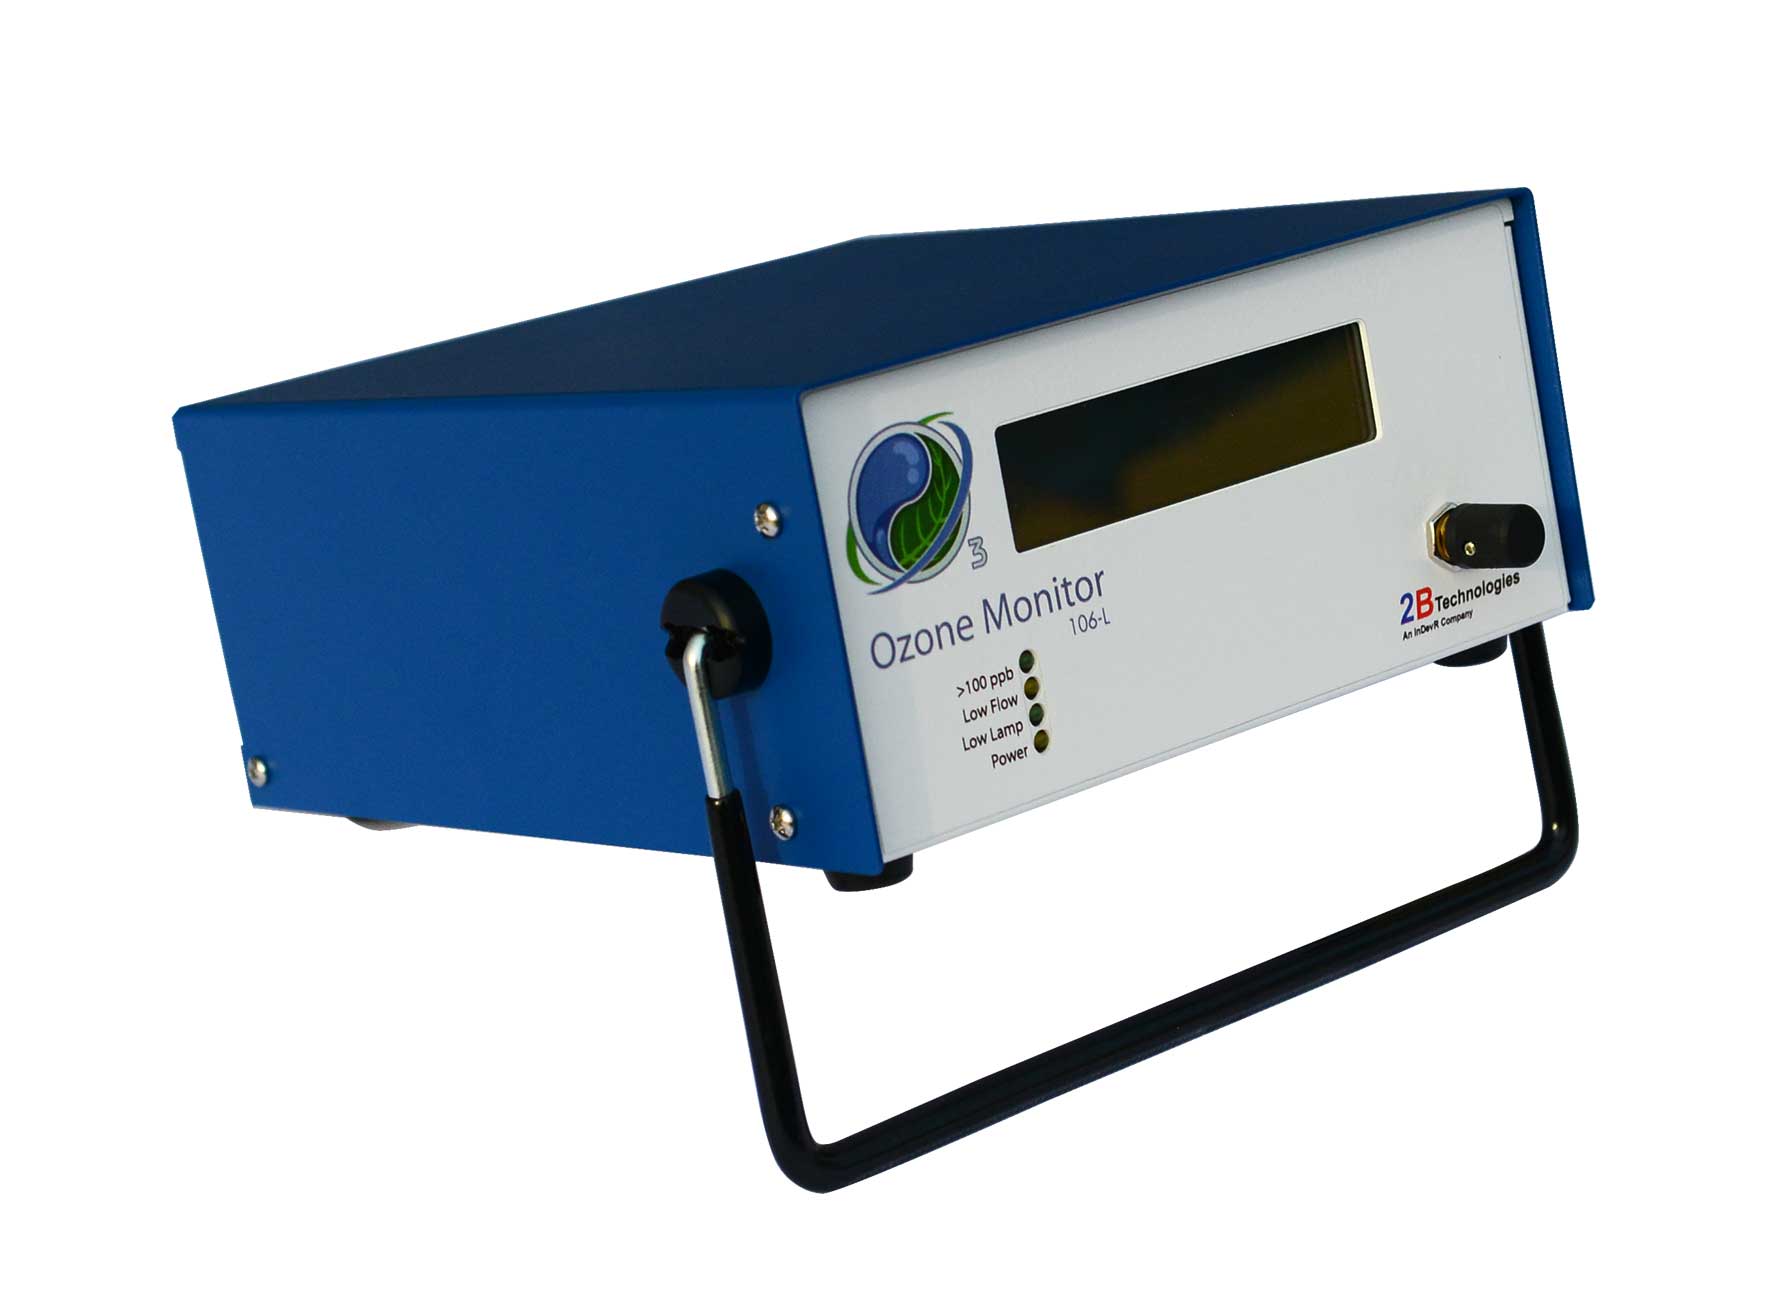 2B Model 106-MH型臭氧监测仪 臭氧浓度0-10000 ppm